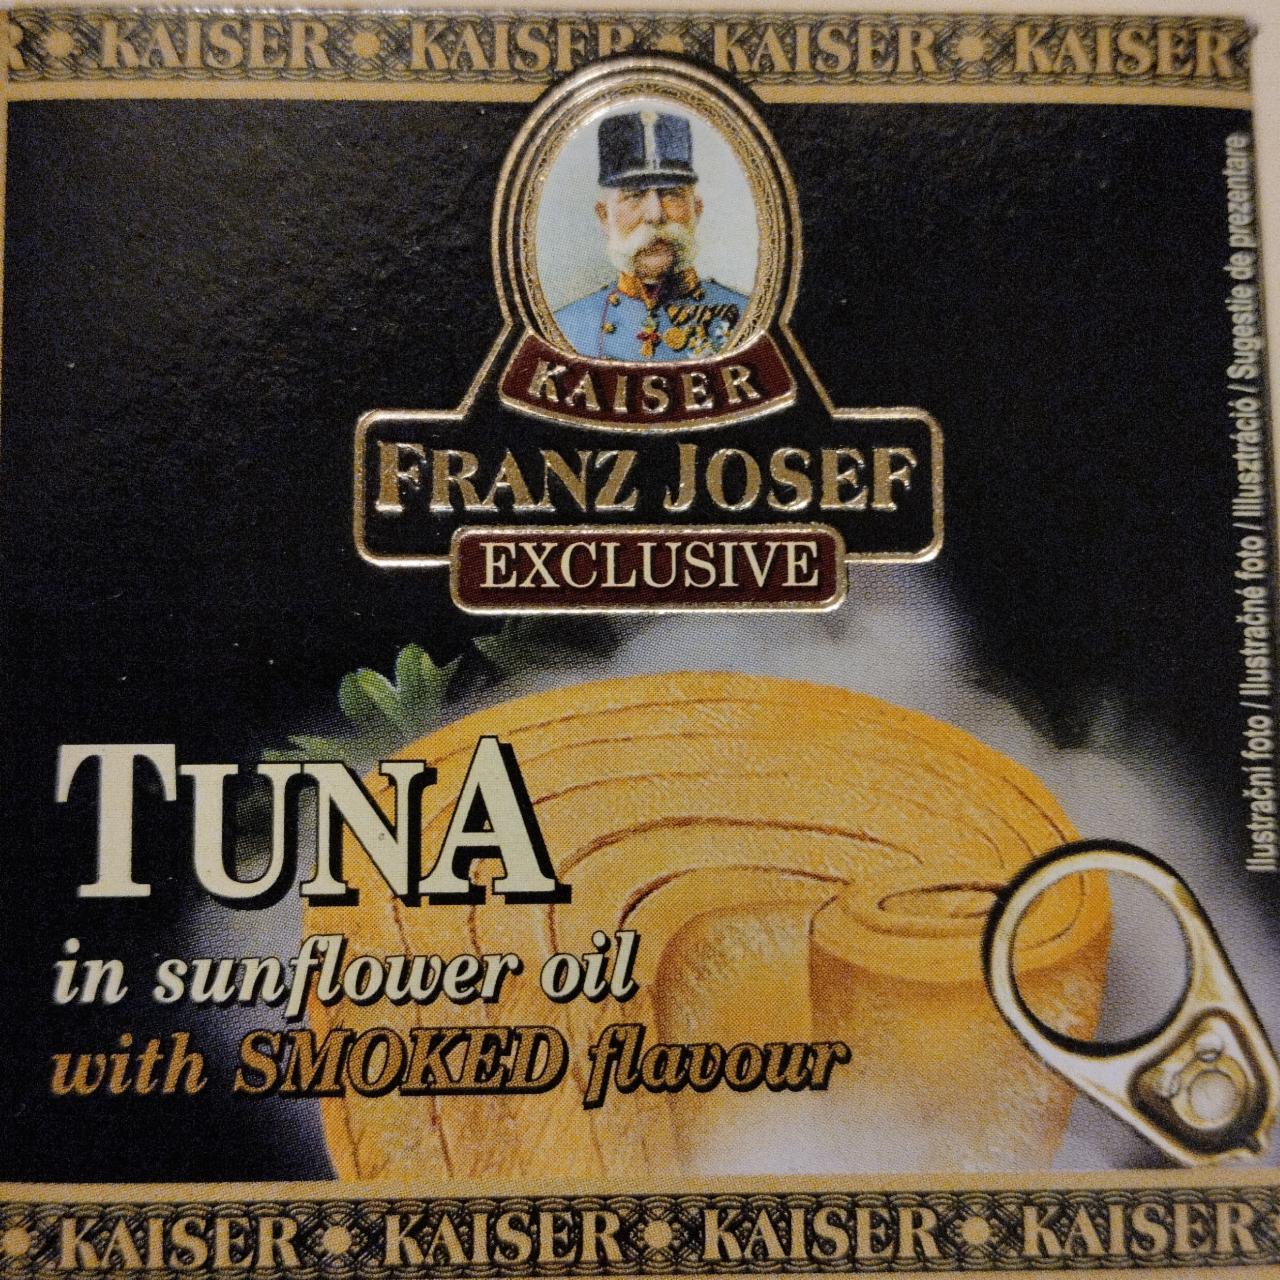 Fotografie - Tuna in Sunflower Oil with Smoked flavour Kaiser Franz Josef